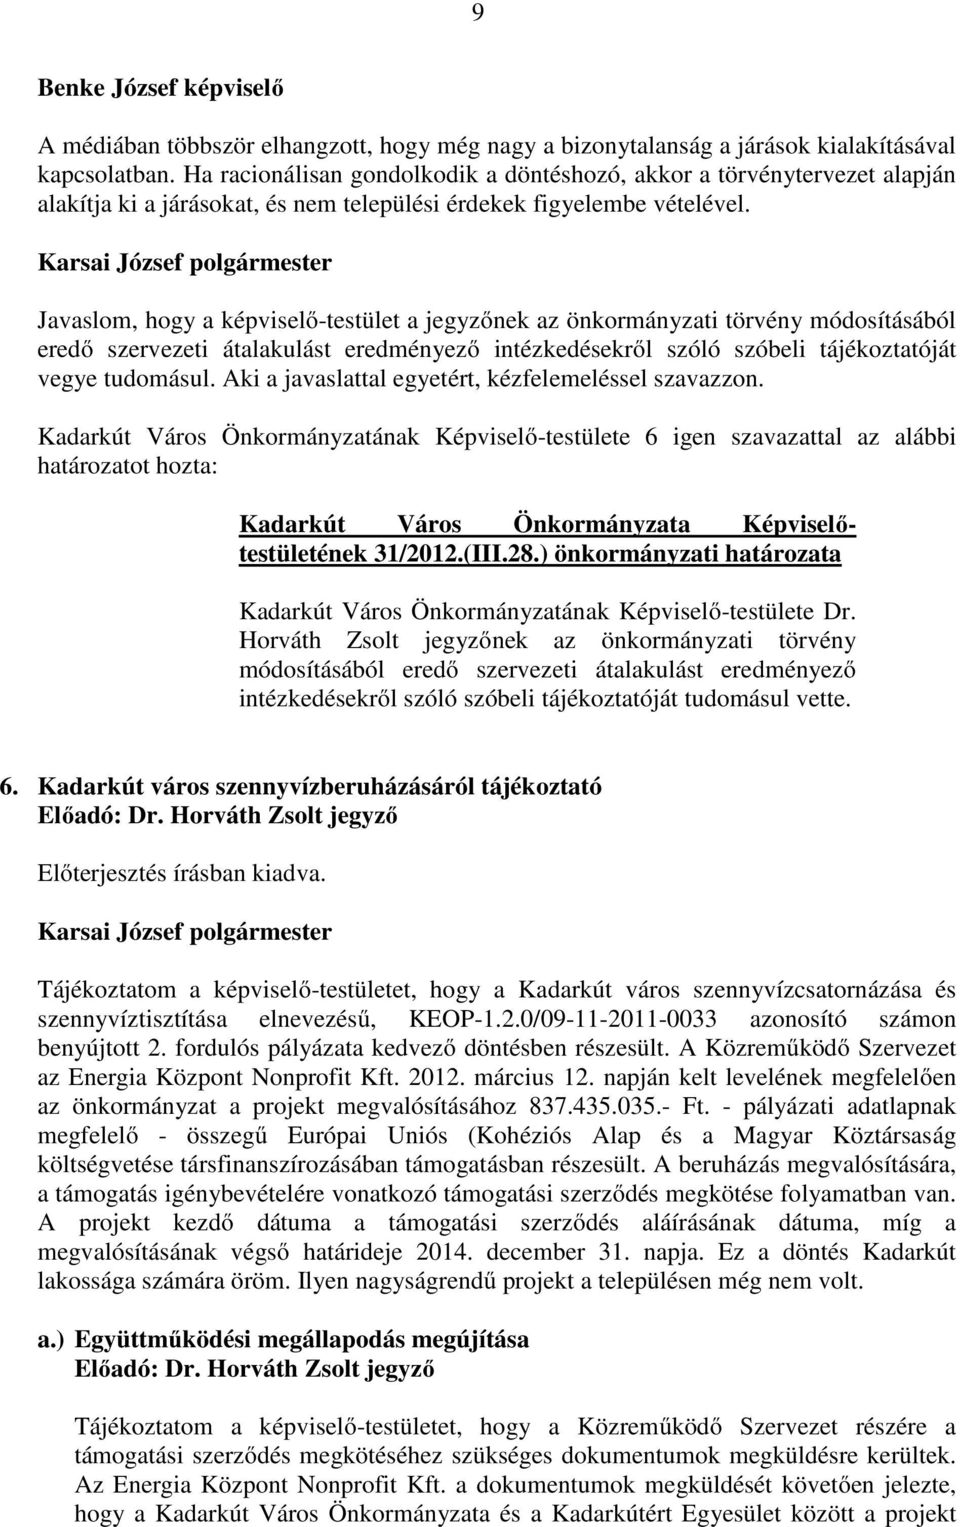 Javaslom, hogy a képviselı-testület a jegyzınek az önkormányzati törvény módosításából eredı szervezeti átalakulást eredményezı intézkedésekrıl szóló szóbeli tájékoztatóját vegye tudomásul.